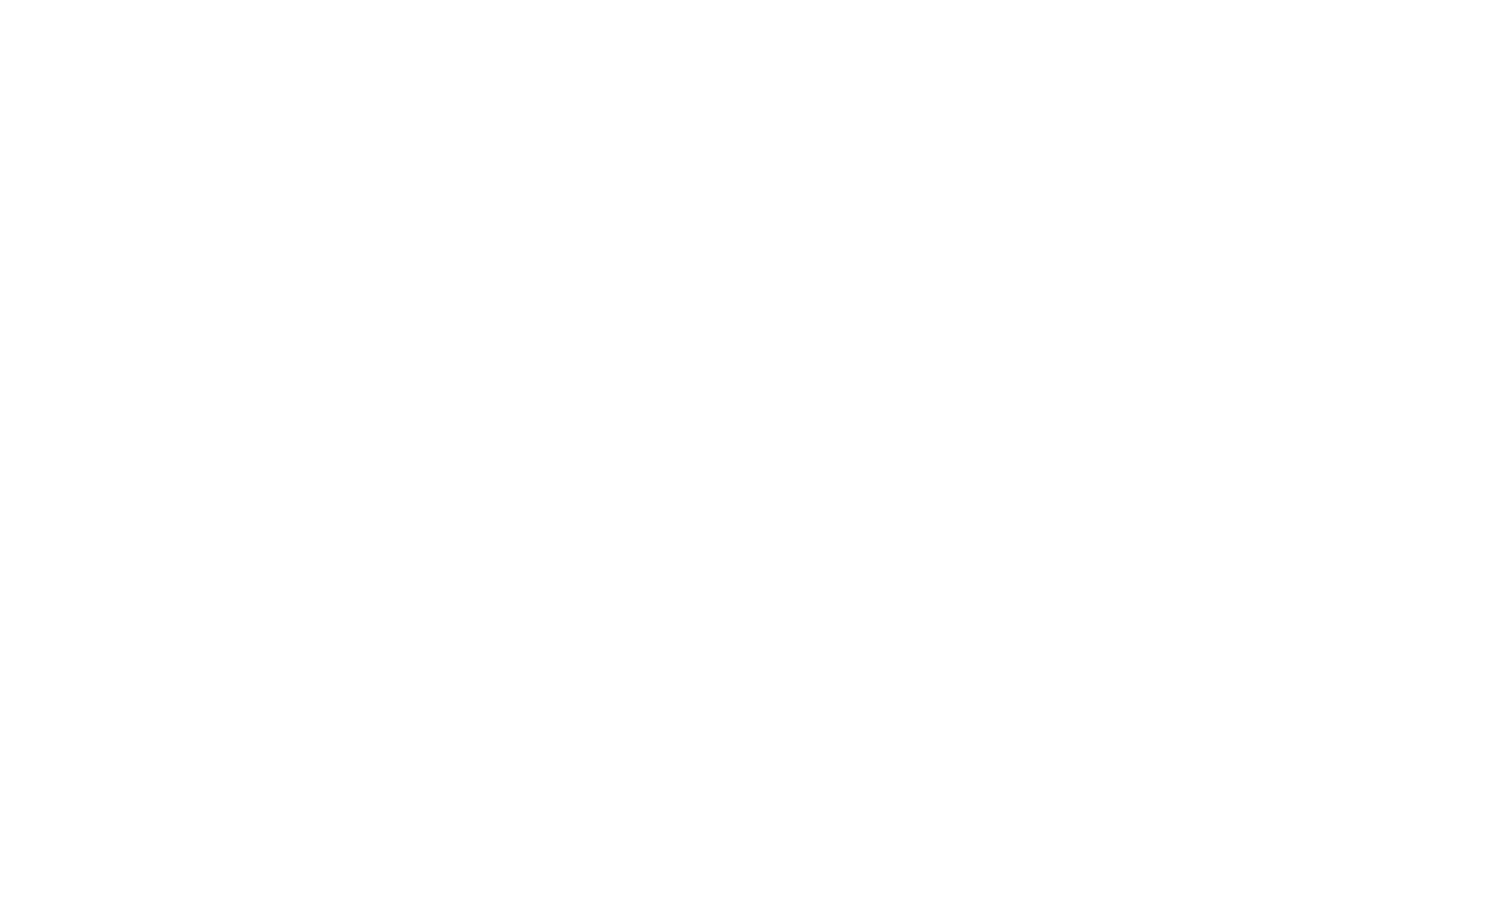 G8 Education logo for dark backgrounds (transparent PNG)